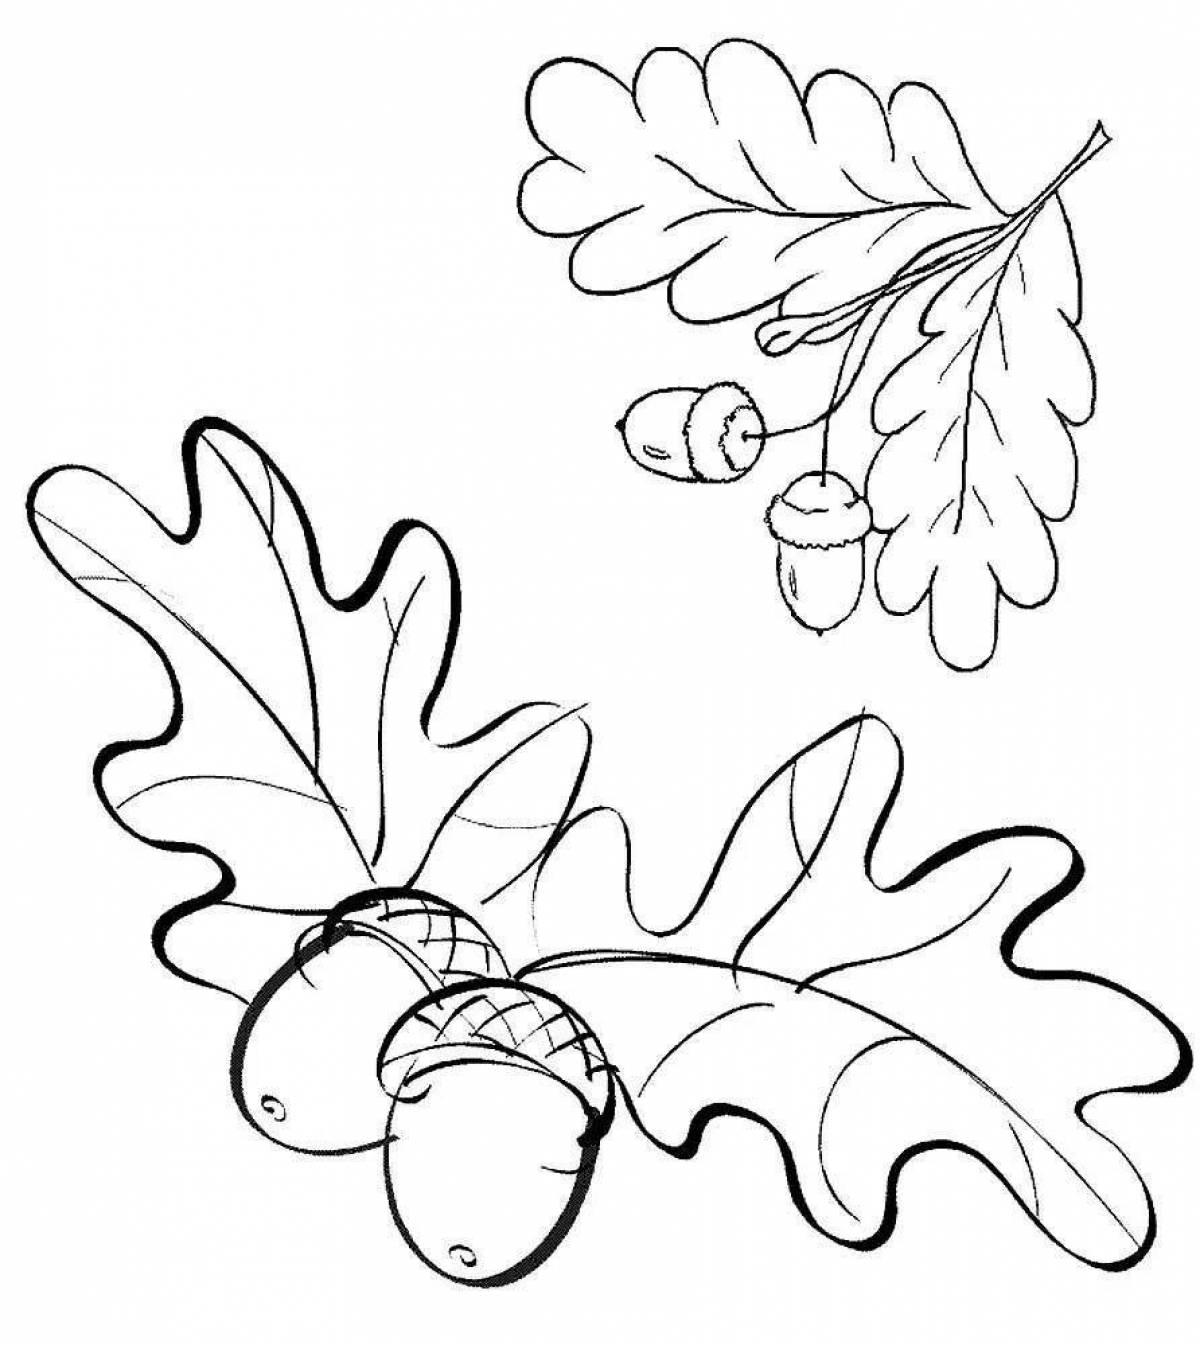 Fun coloring oak leaf